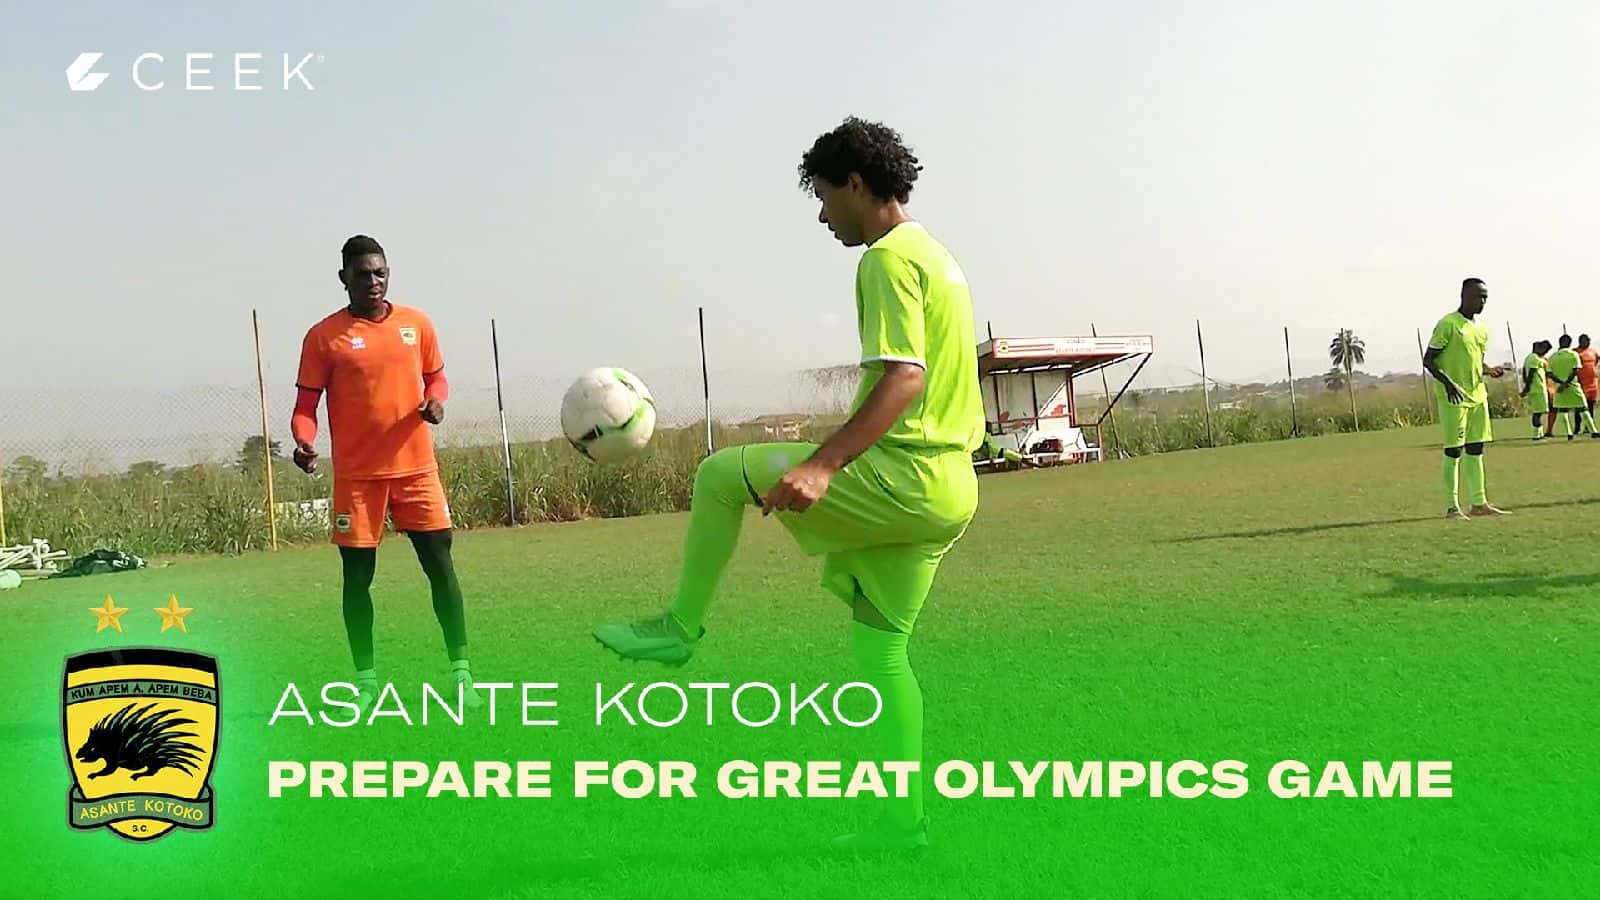 Asante Kotoko Asante Kotoko prepare for Great Olympics game